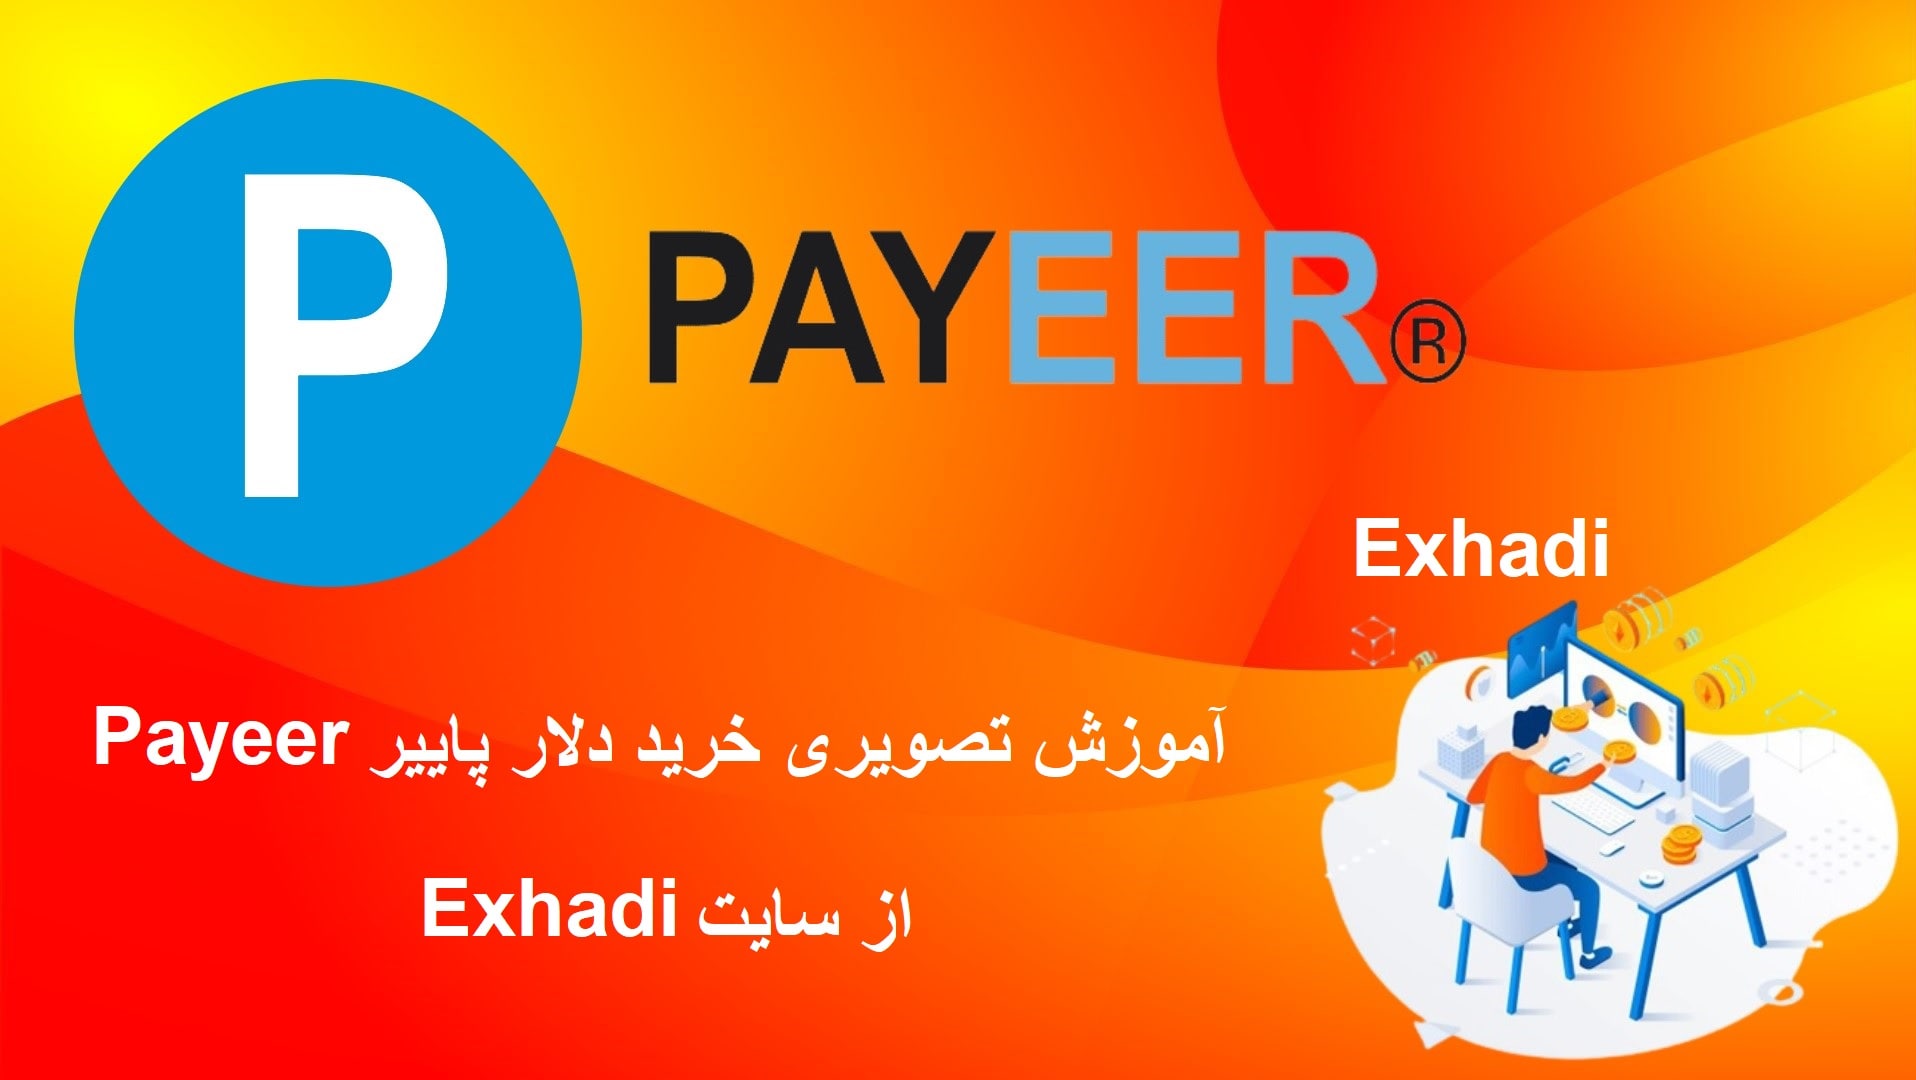 اموزش تصویری خرید دلار پاییر Payeer از سایت Exhadi | چگونه پاییر بخرم و بفروشم | فروش پاییر بدون کارمزد | خرید و فروش پاییر بدون کارمزد